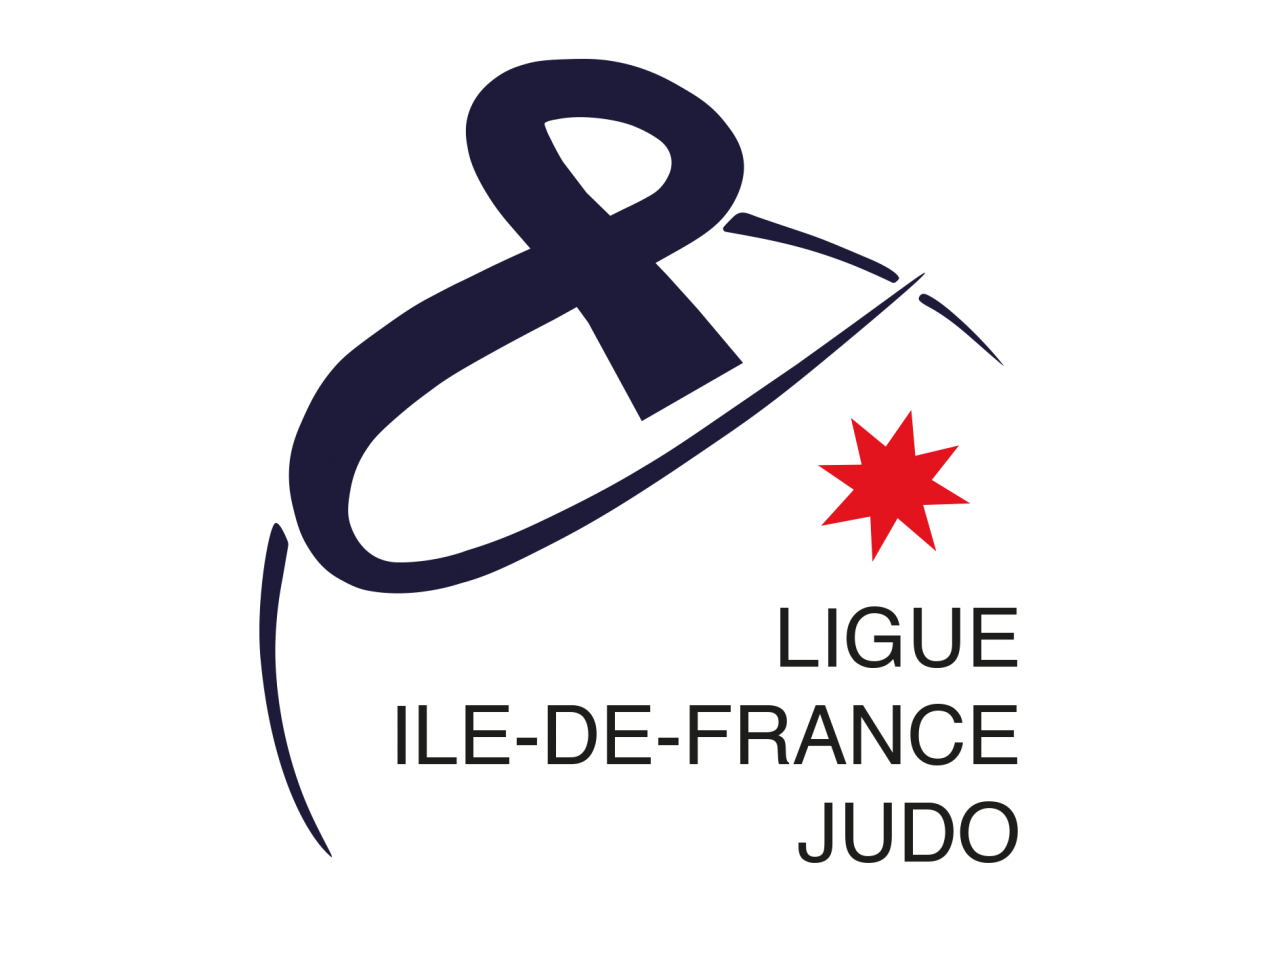 ILE-DE-FRANCE JUDO